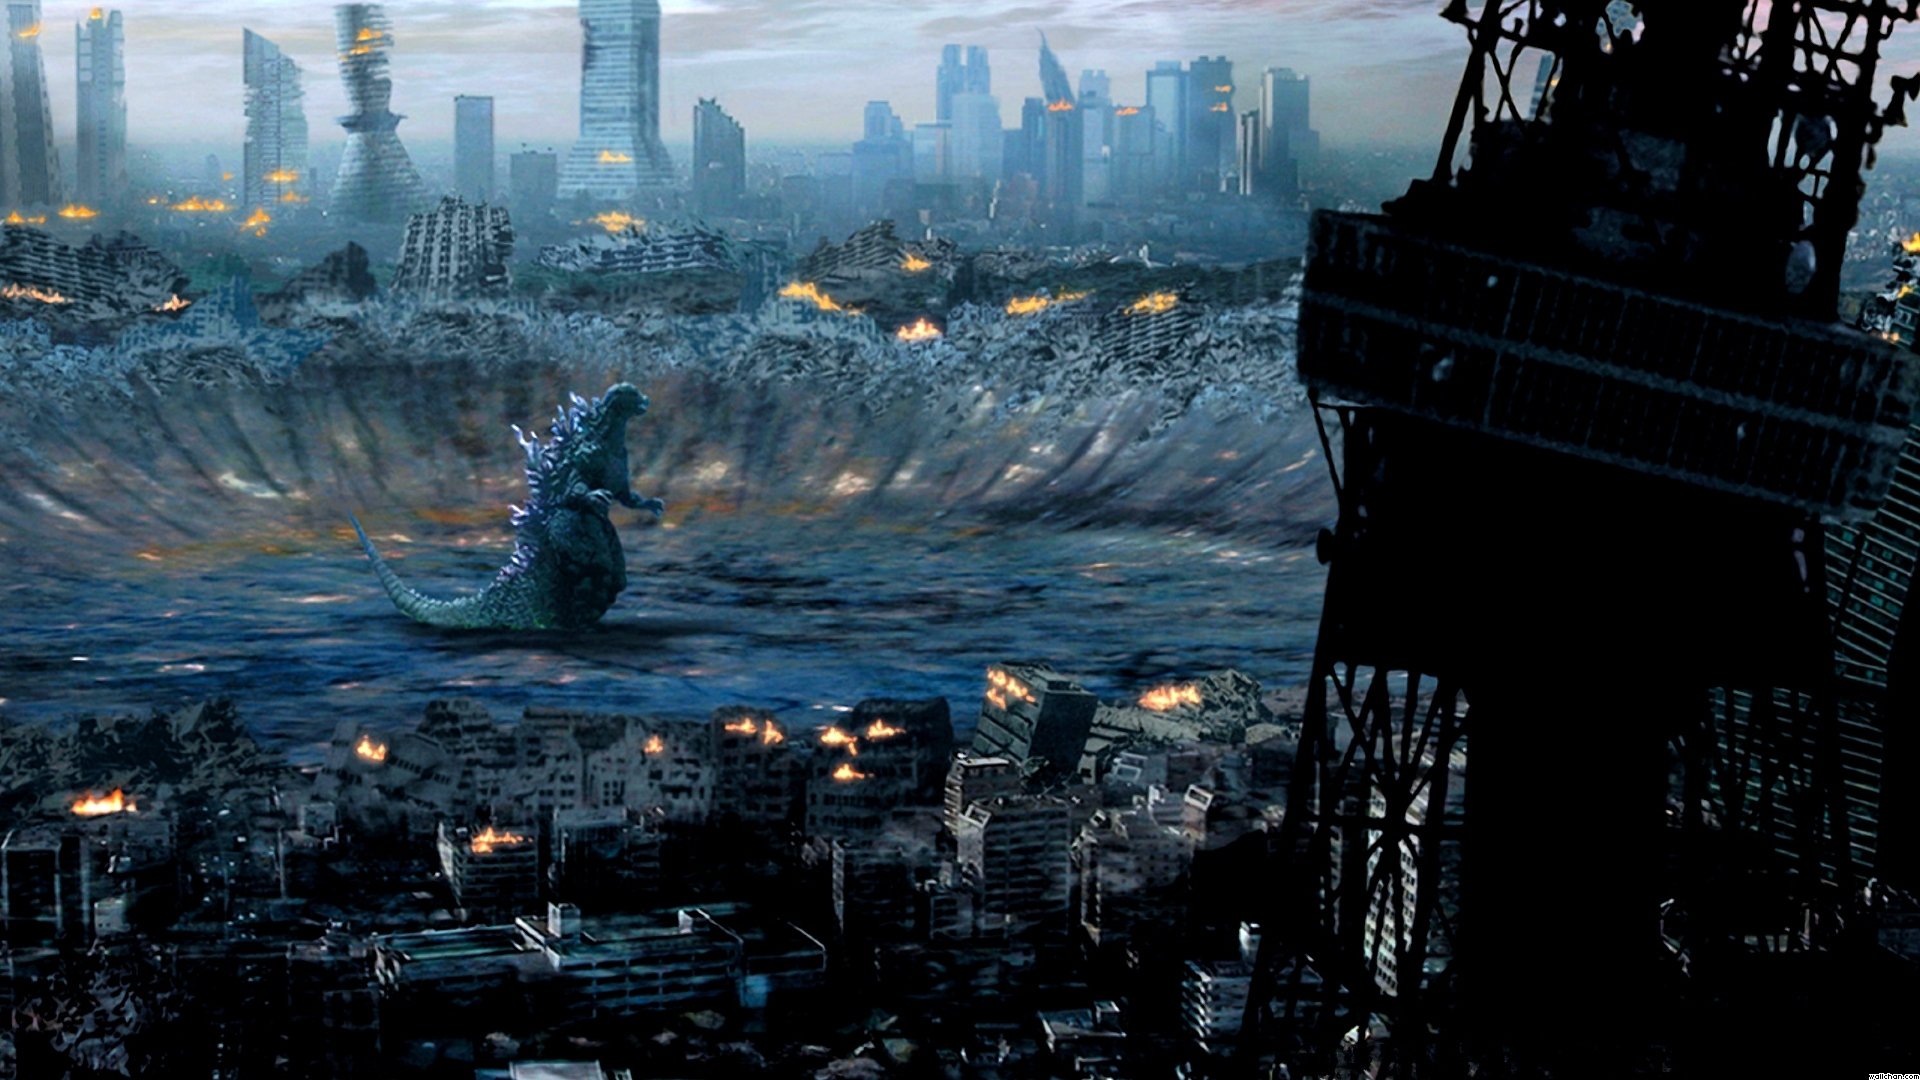 Godzilla Full HD Wallpaper and Background Image | 1920x1080 | ID:445812